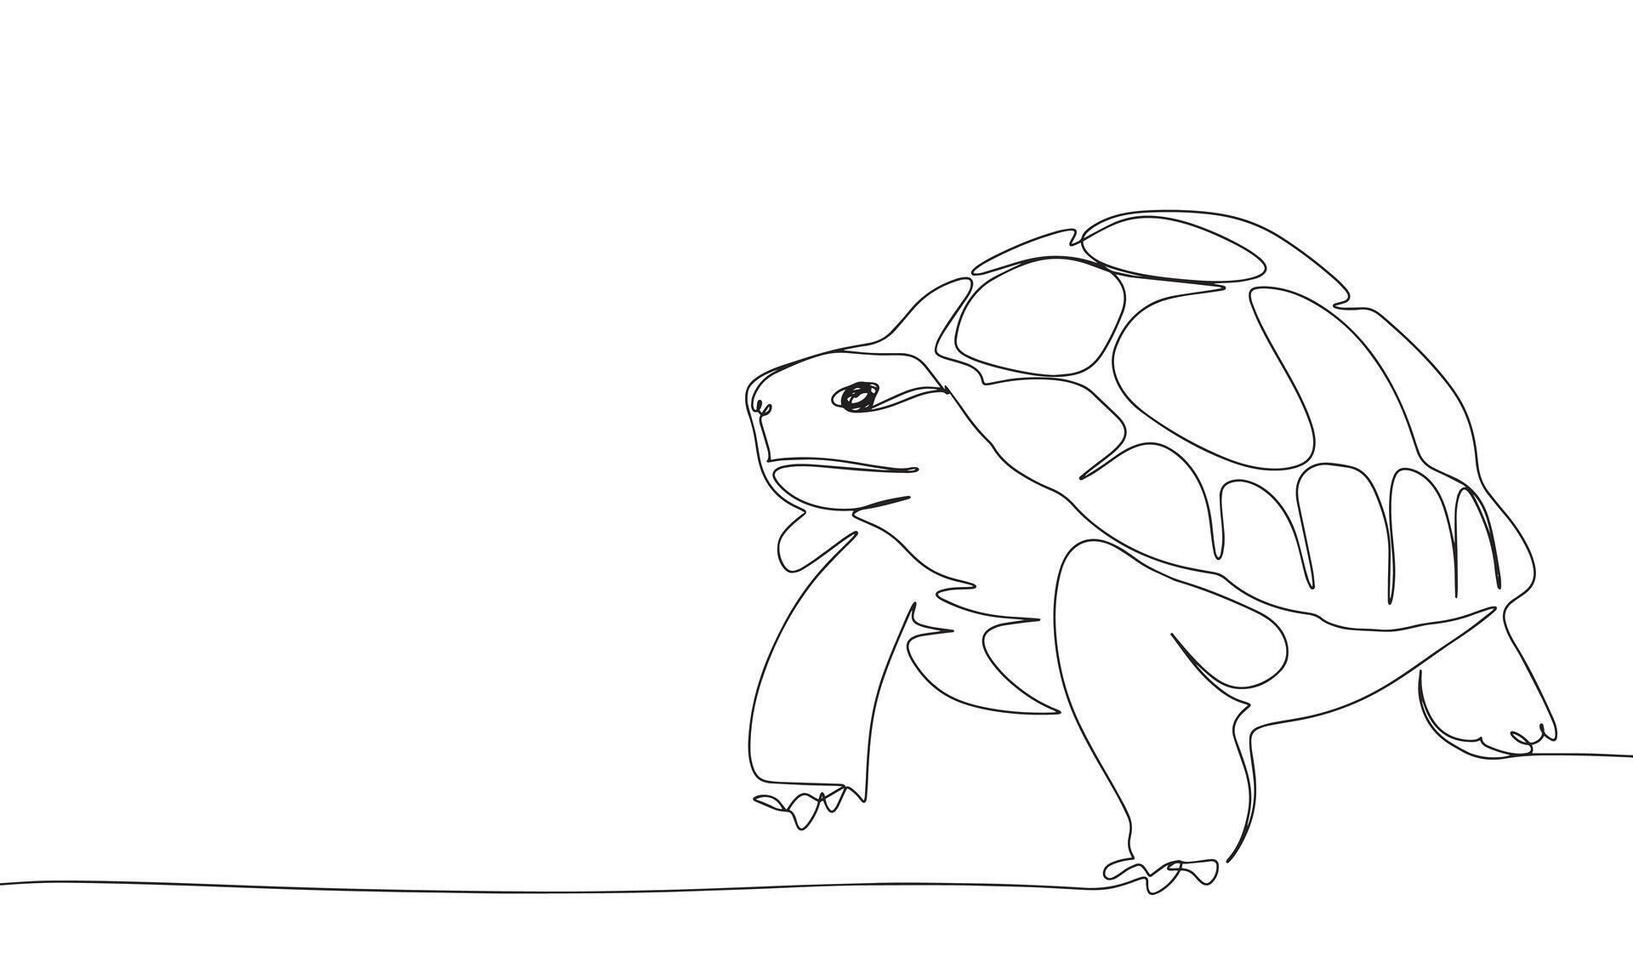 Schildkröte einer Linie kontinuierlich. Linie Kunst Schildkröte. Hand gezeichnet Kunst. vektor